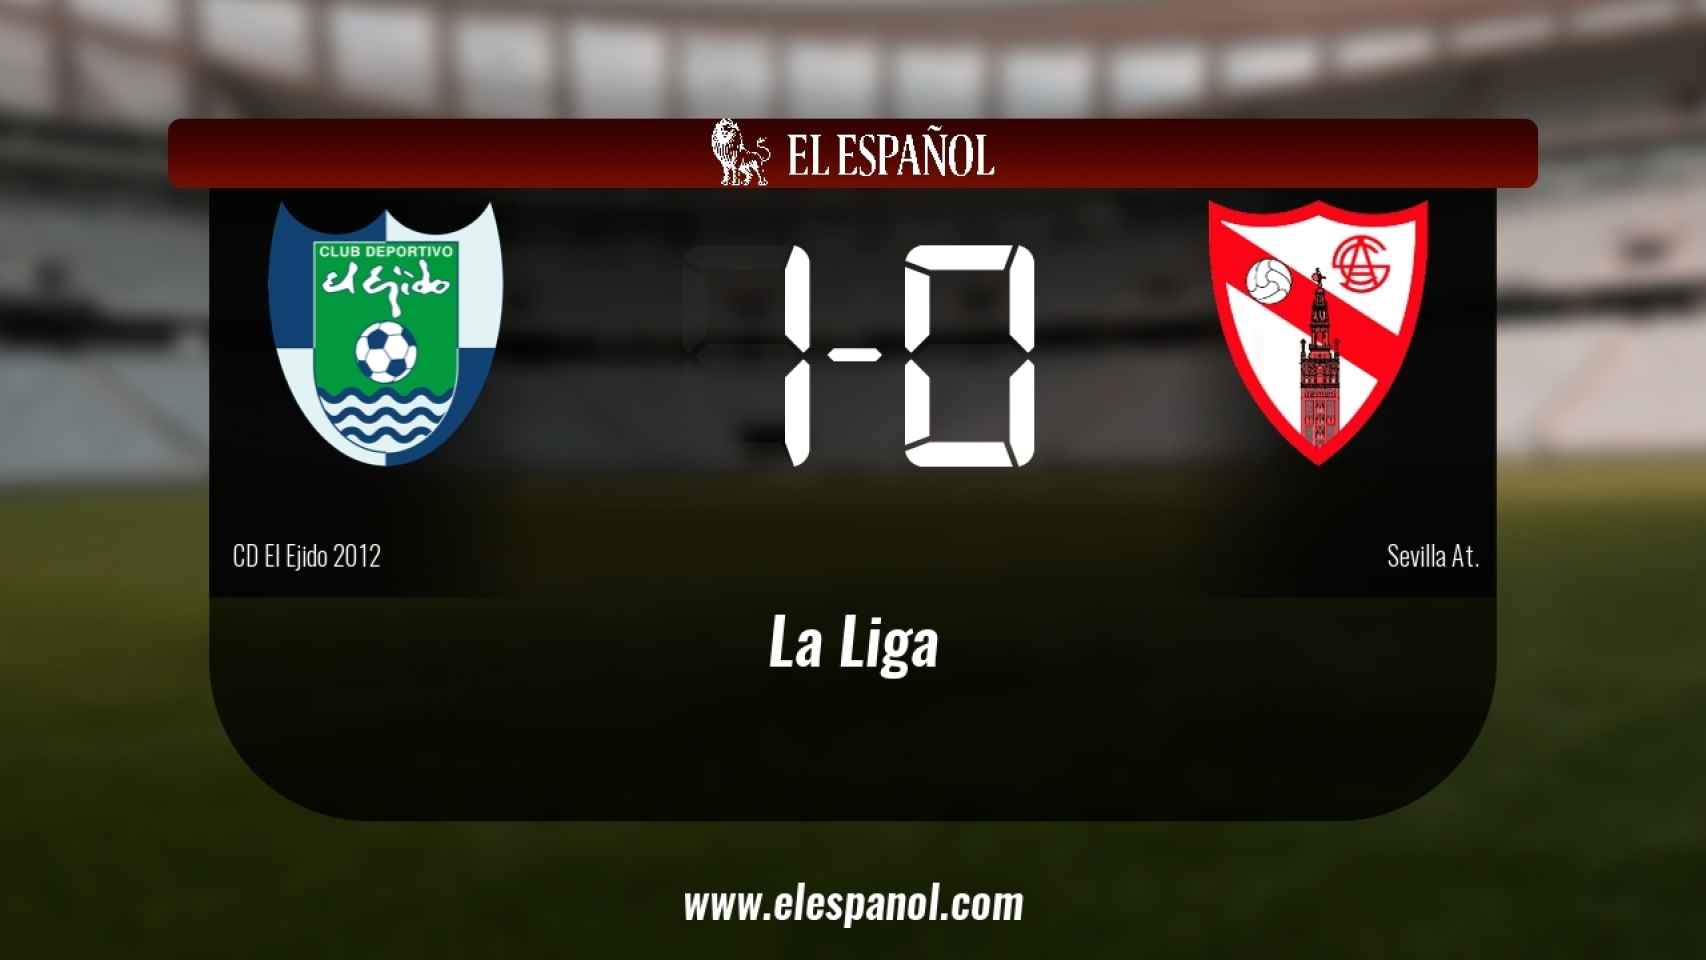 El Ejido 2012 derrotó al Sevilla At. por 1-0